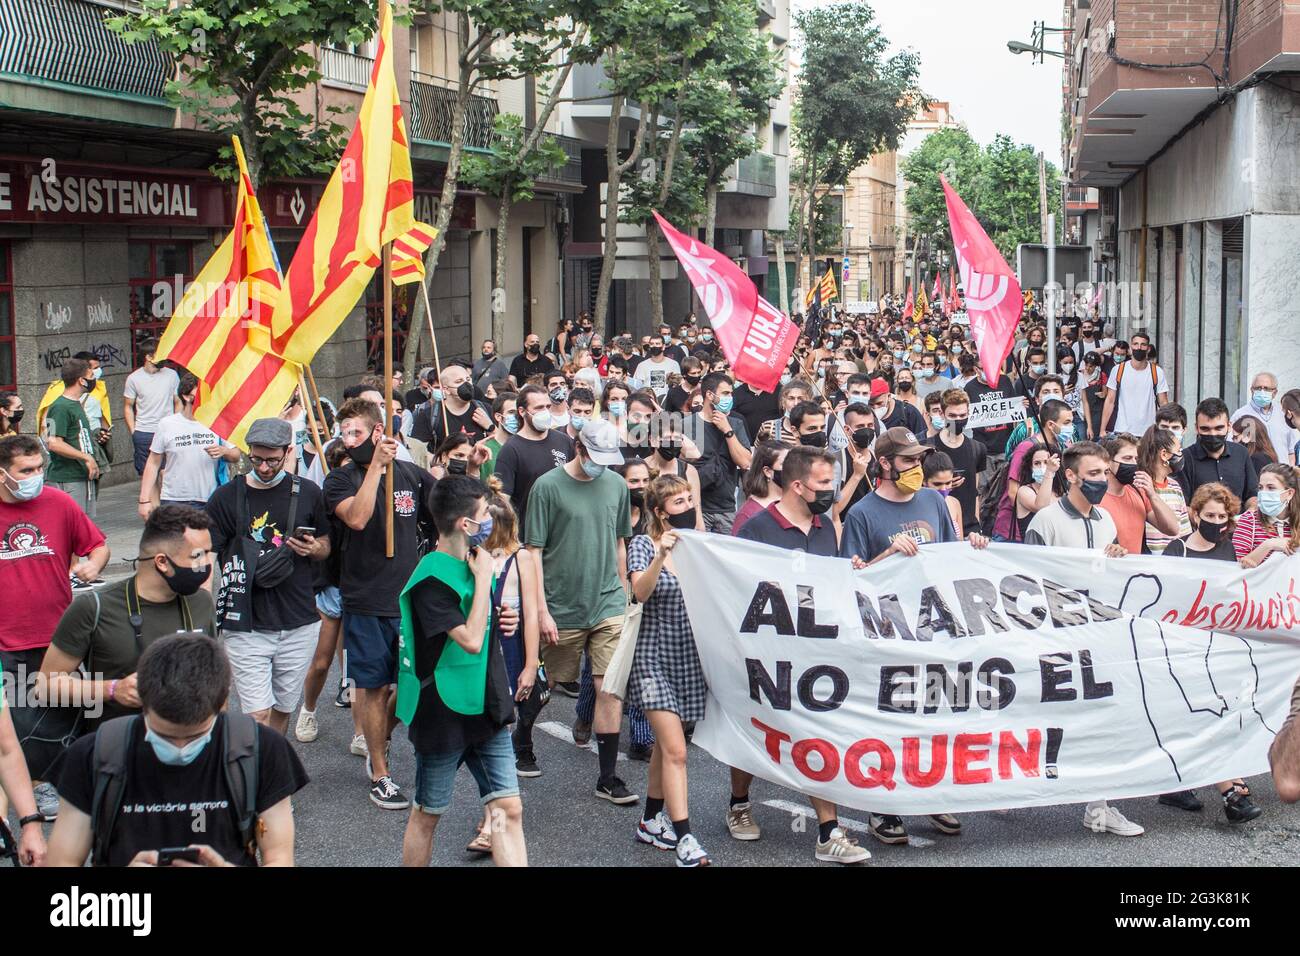 Los manifestantes marchan por la calle mientras sostenían una bandera y banderas durante la manifestación.Cientos de personas se han manifestado en Badalona, una ciudad al lado de Barcelona en solidaridad con Marcel Vivet, Quién ha sido condenado a cinco años de prisión por los incidentes ocurridos en una manifestación de independencia catalana en septiembre de 2018 en Barcelona contra un acto del sindicato de policía, Jusapol (Justicia del Salario Policial). Vivet ha sido juzgado por un delito de desorden público y ataque contra un agente de la autoridad. A la manifestación asistió Dolors Sabater, diputado del Parlamento de Cat Foto de stock